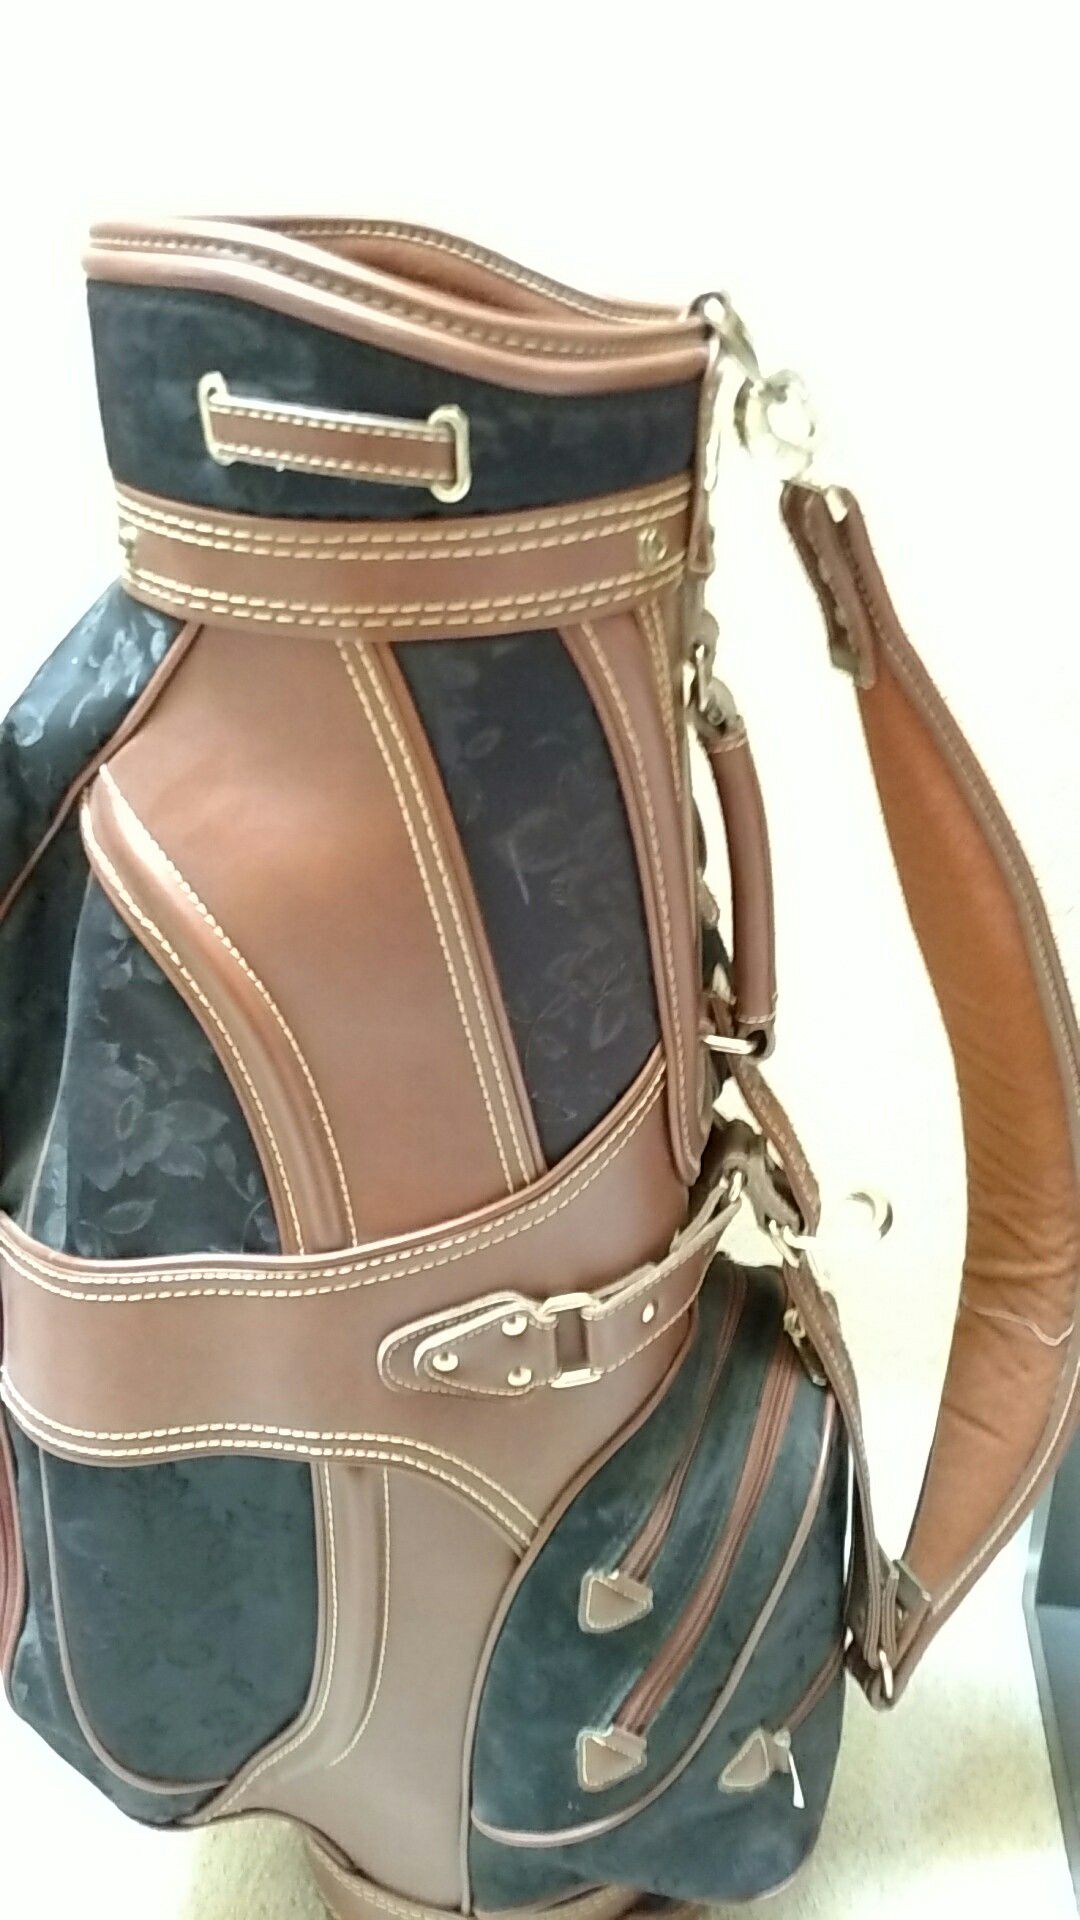 Woman's Cart golf bag